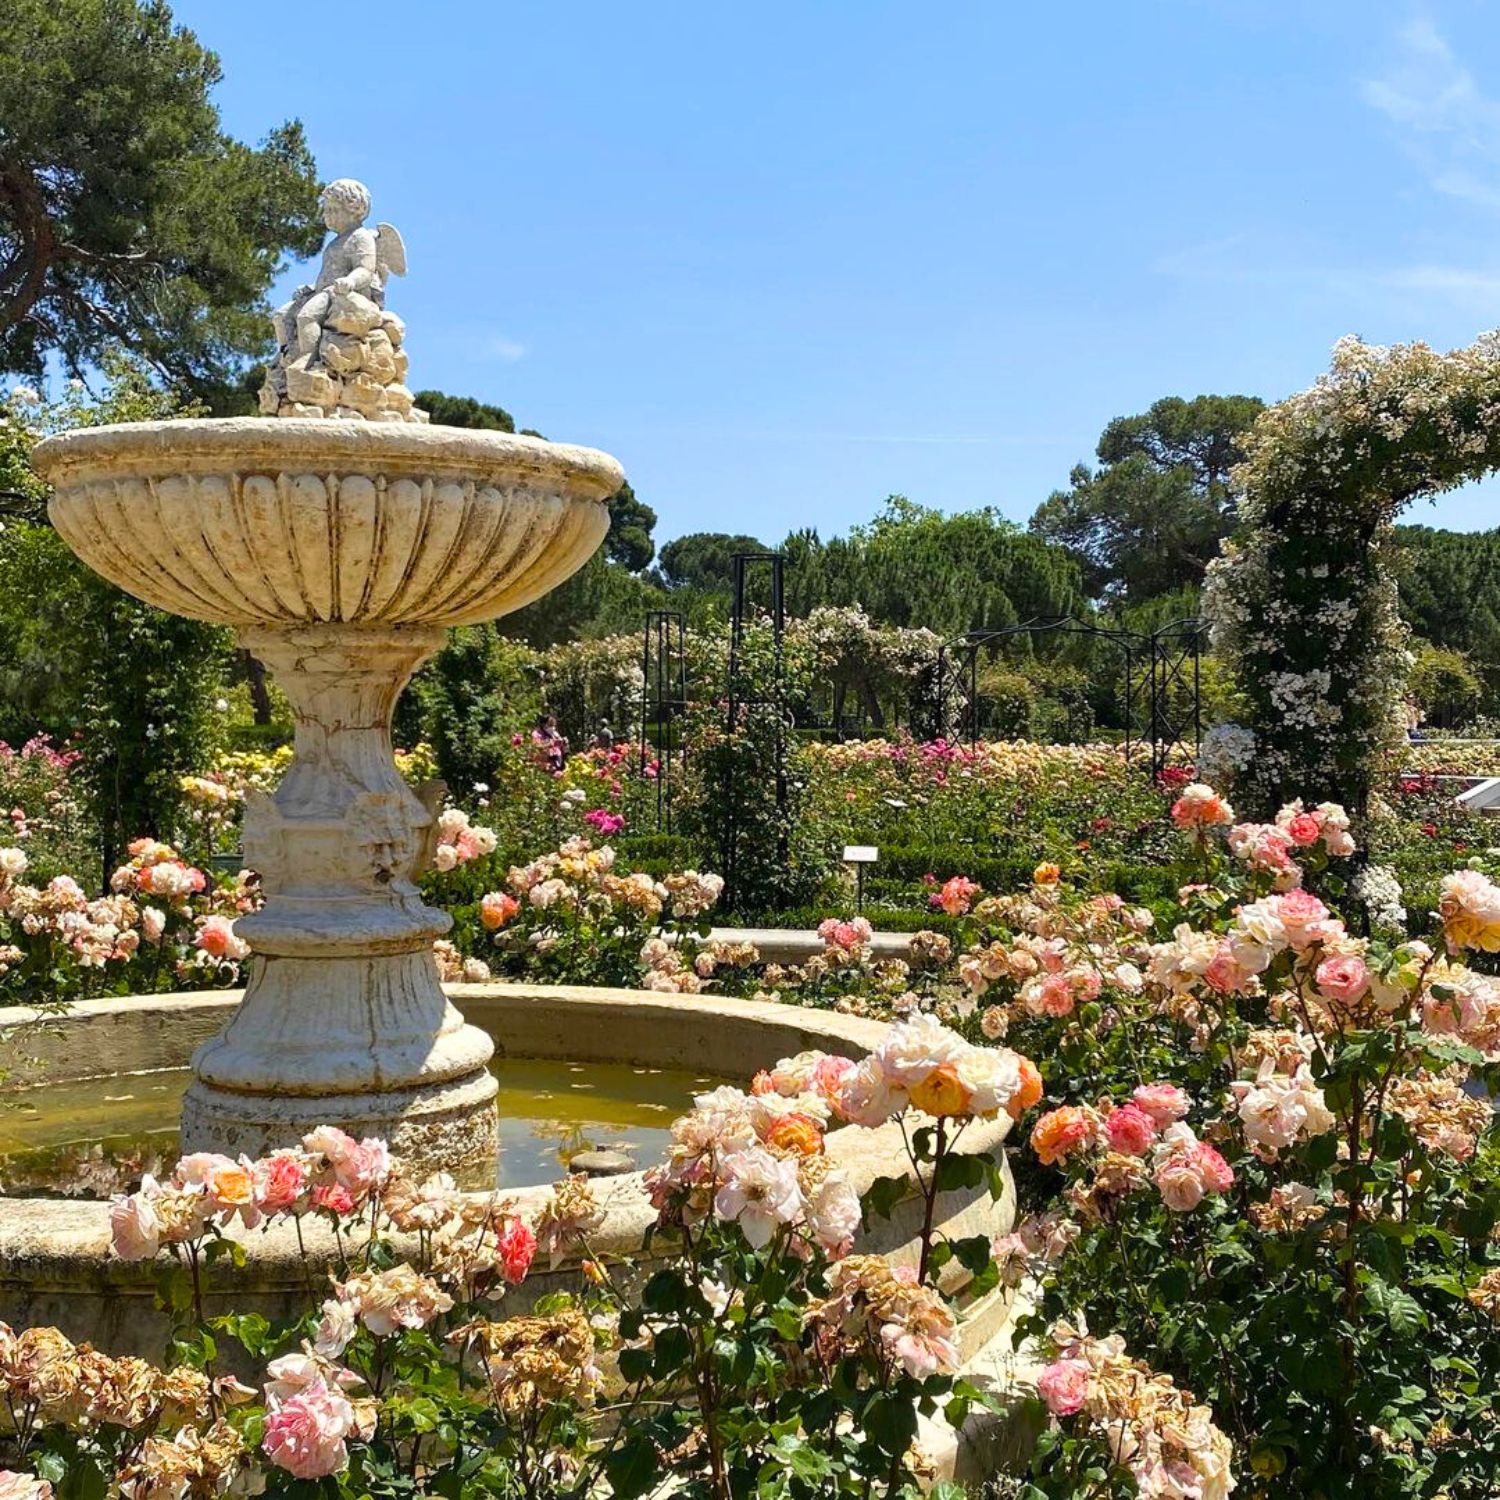 La Rosaleda rose garden in Retiro Park